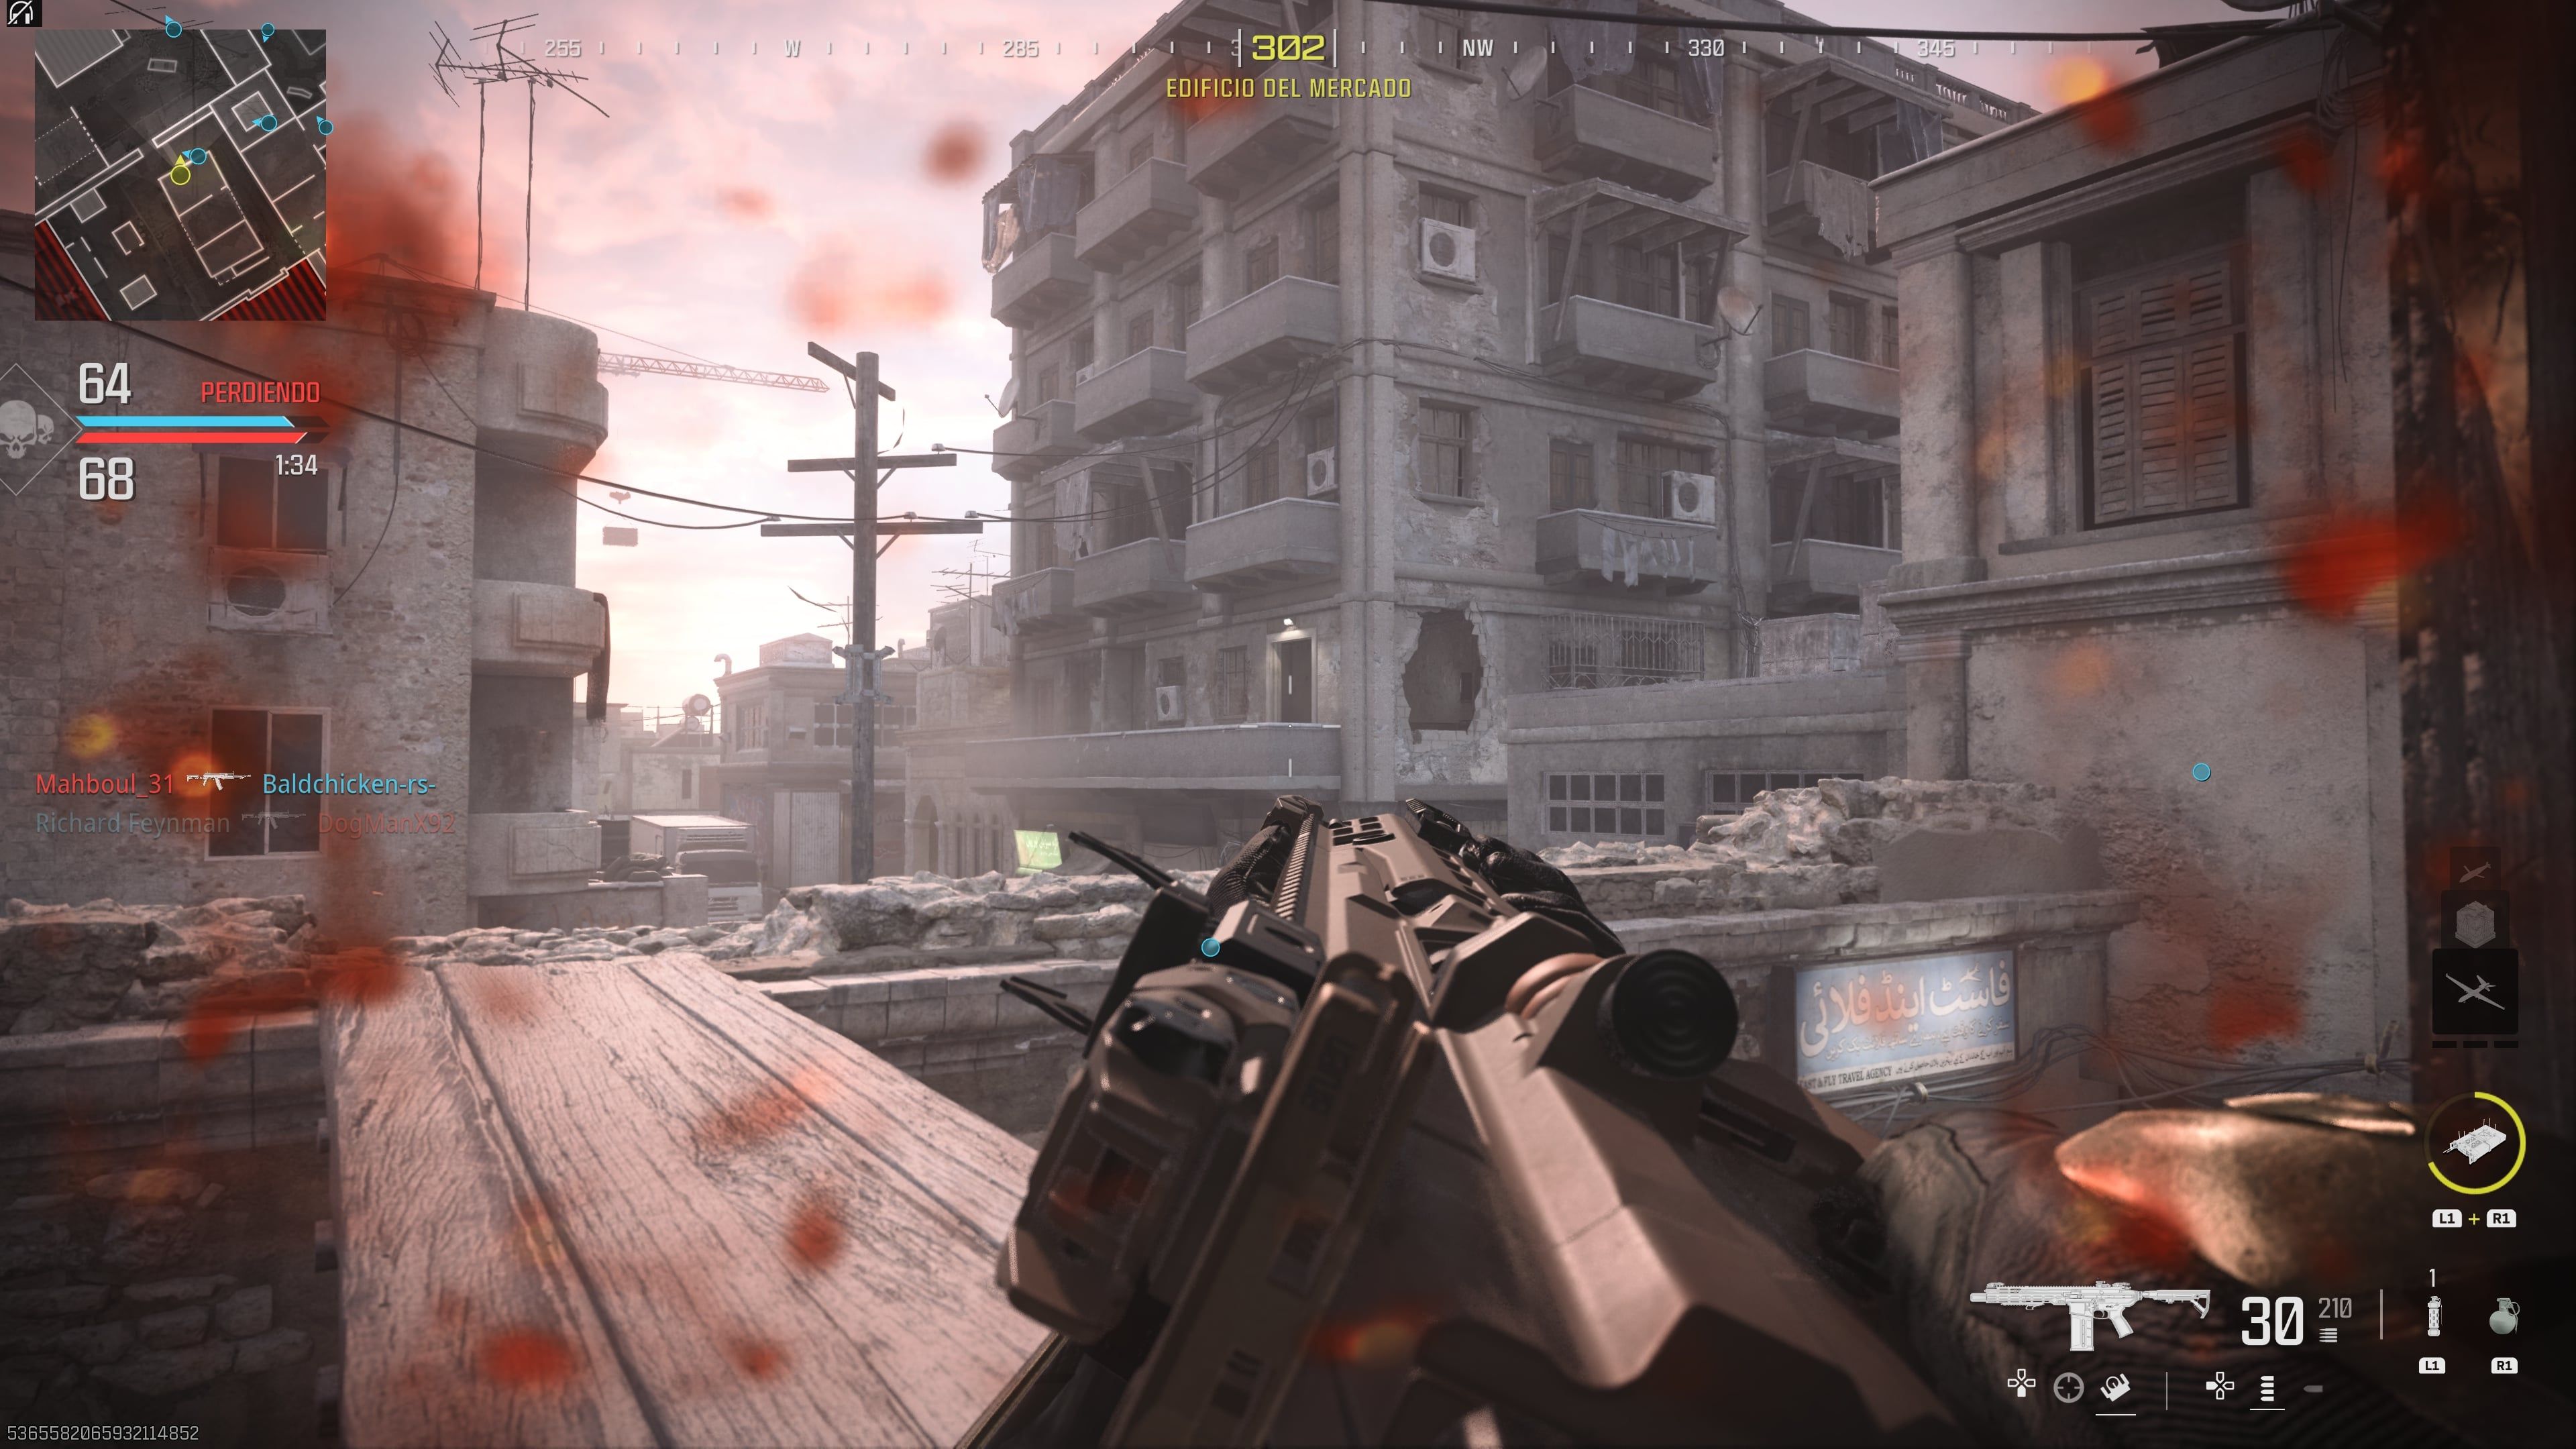 Review: Call of Duty Modern Warfare 2 é um excelente estimulante